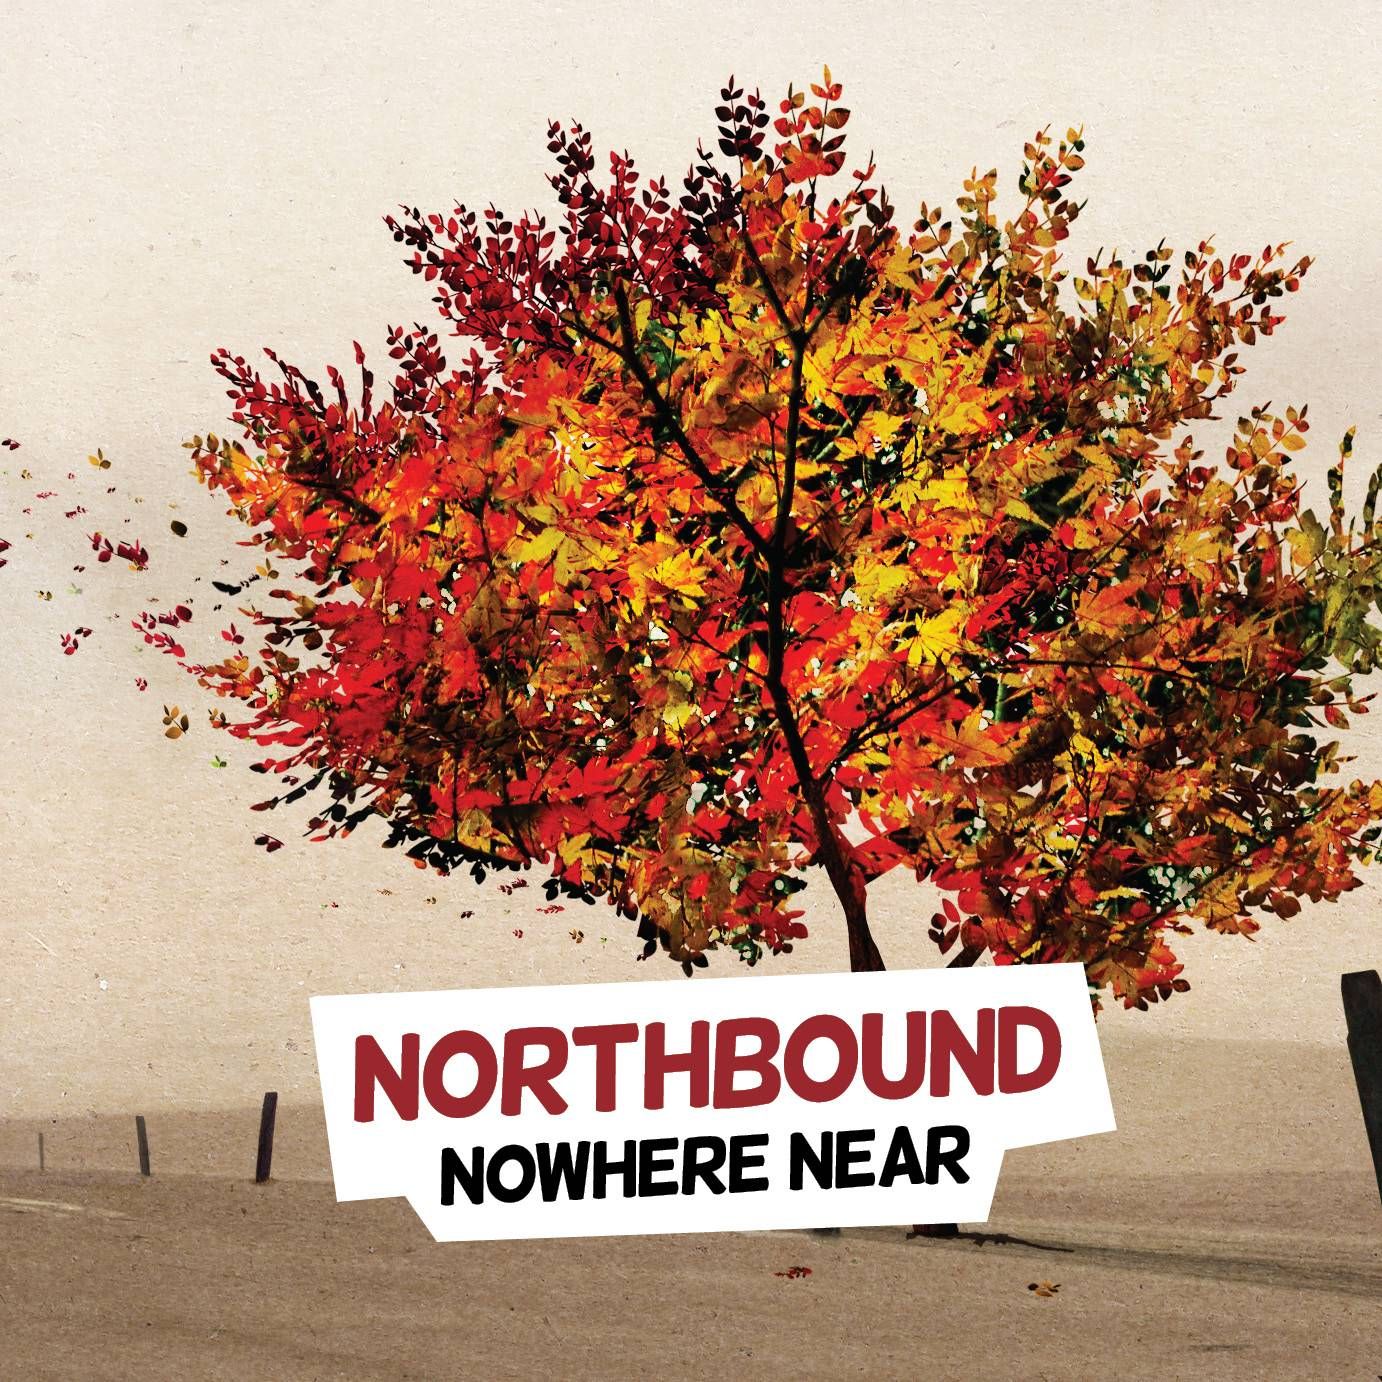 Nowhere near. Northbound.